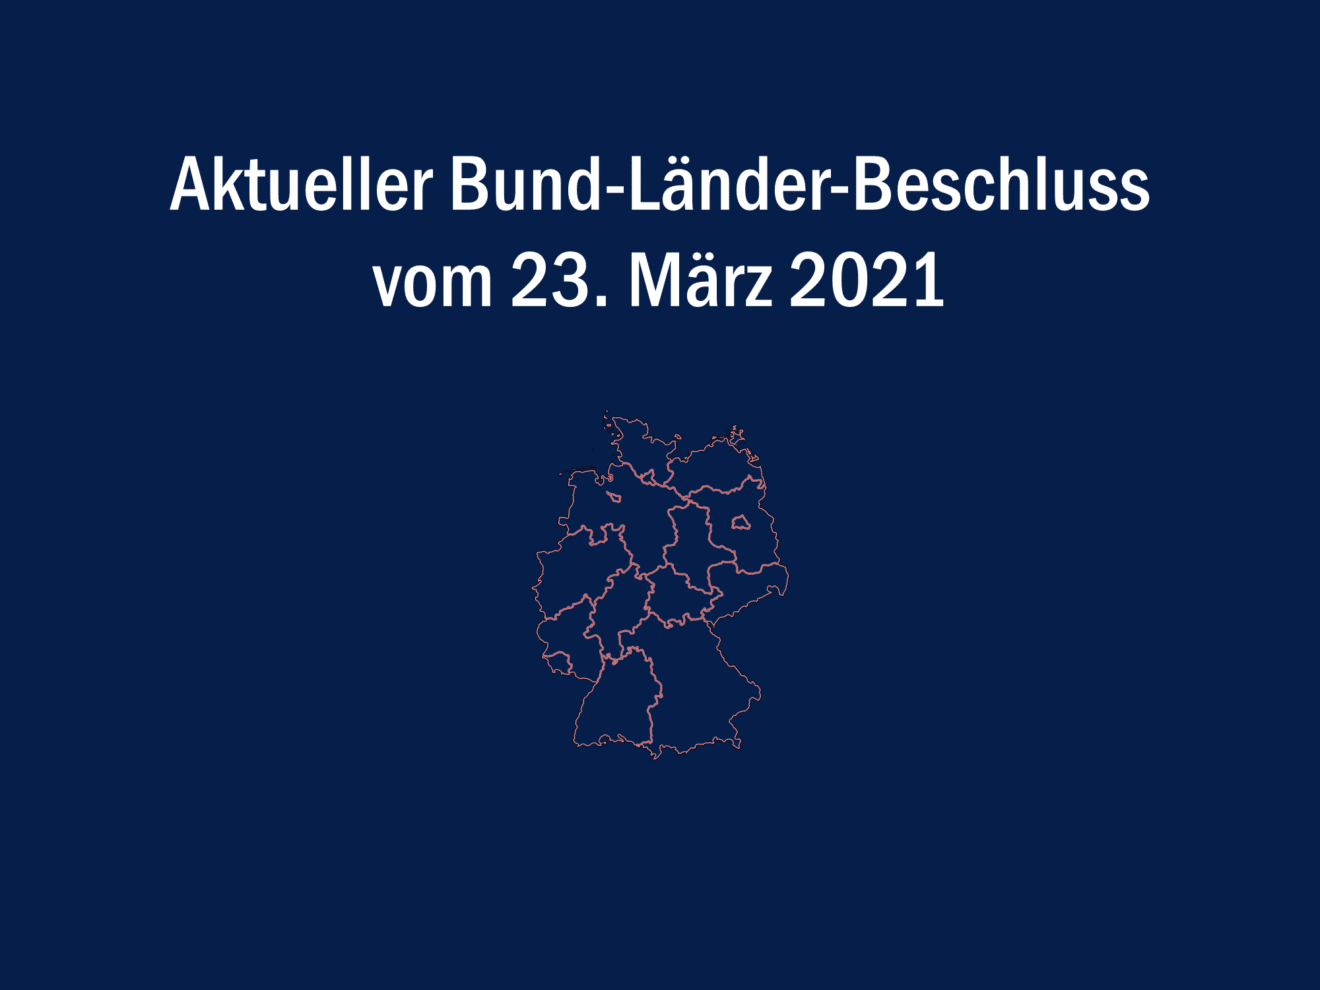 Bund-Länder-Beschluss vom 23. März 2021 - Lockdown bis 18. April 2021 verlängert und über Ostern verschärft